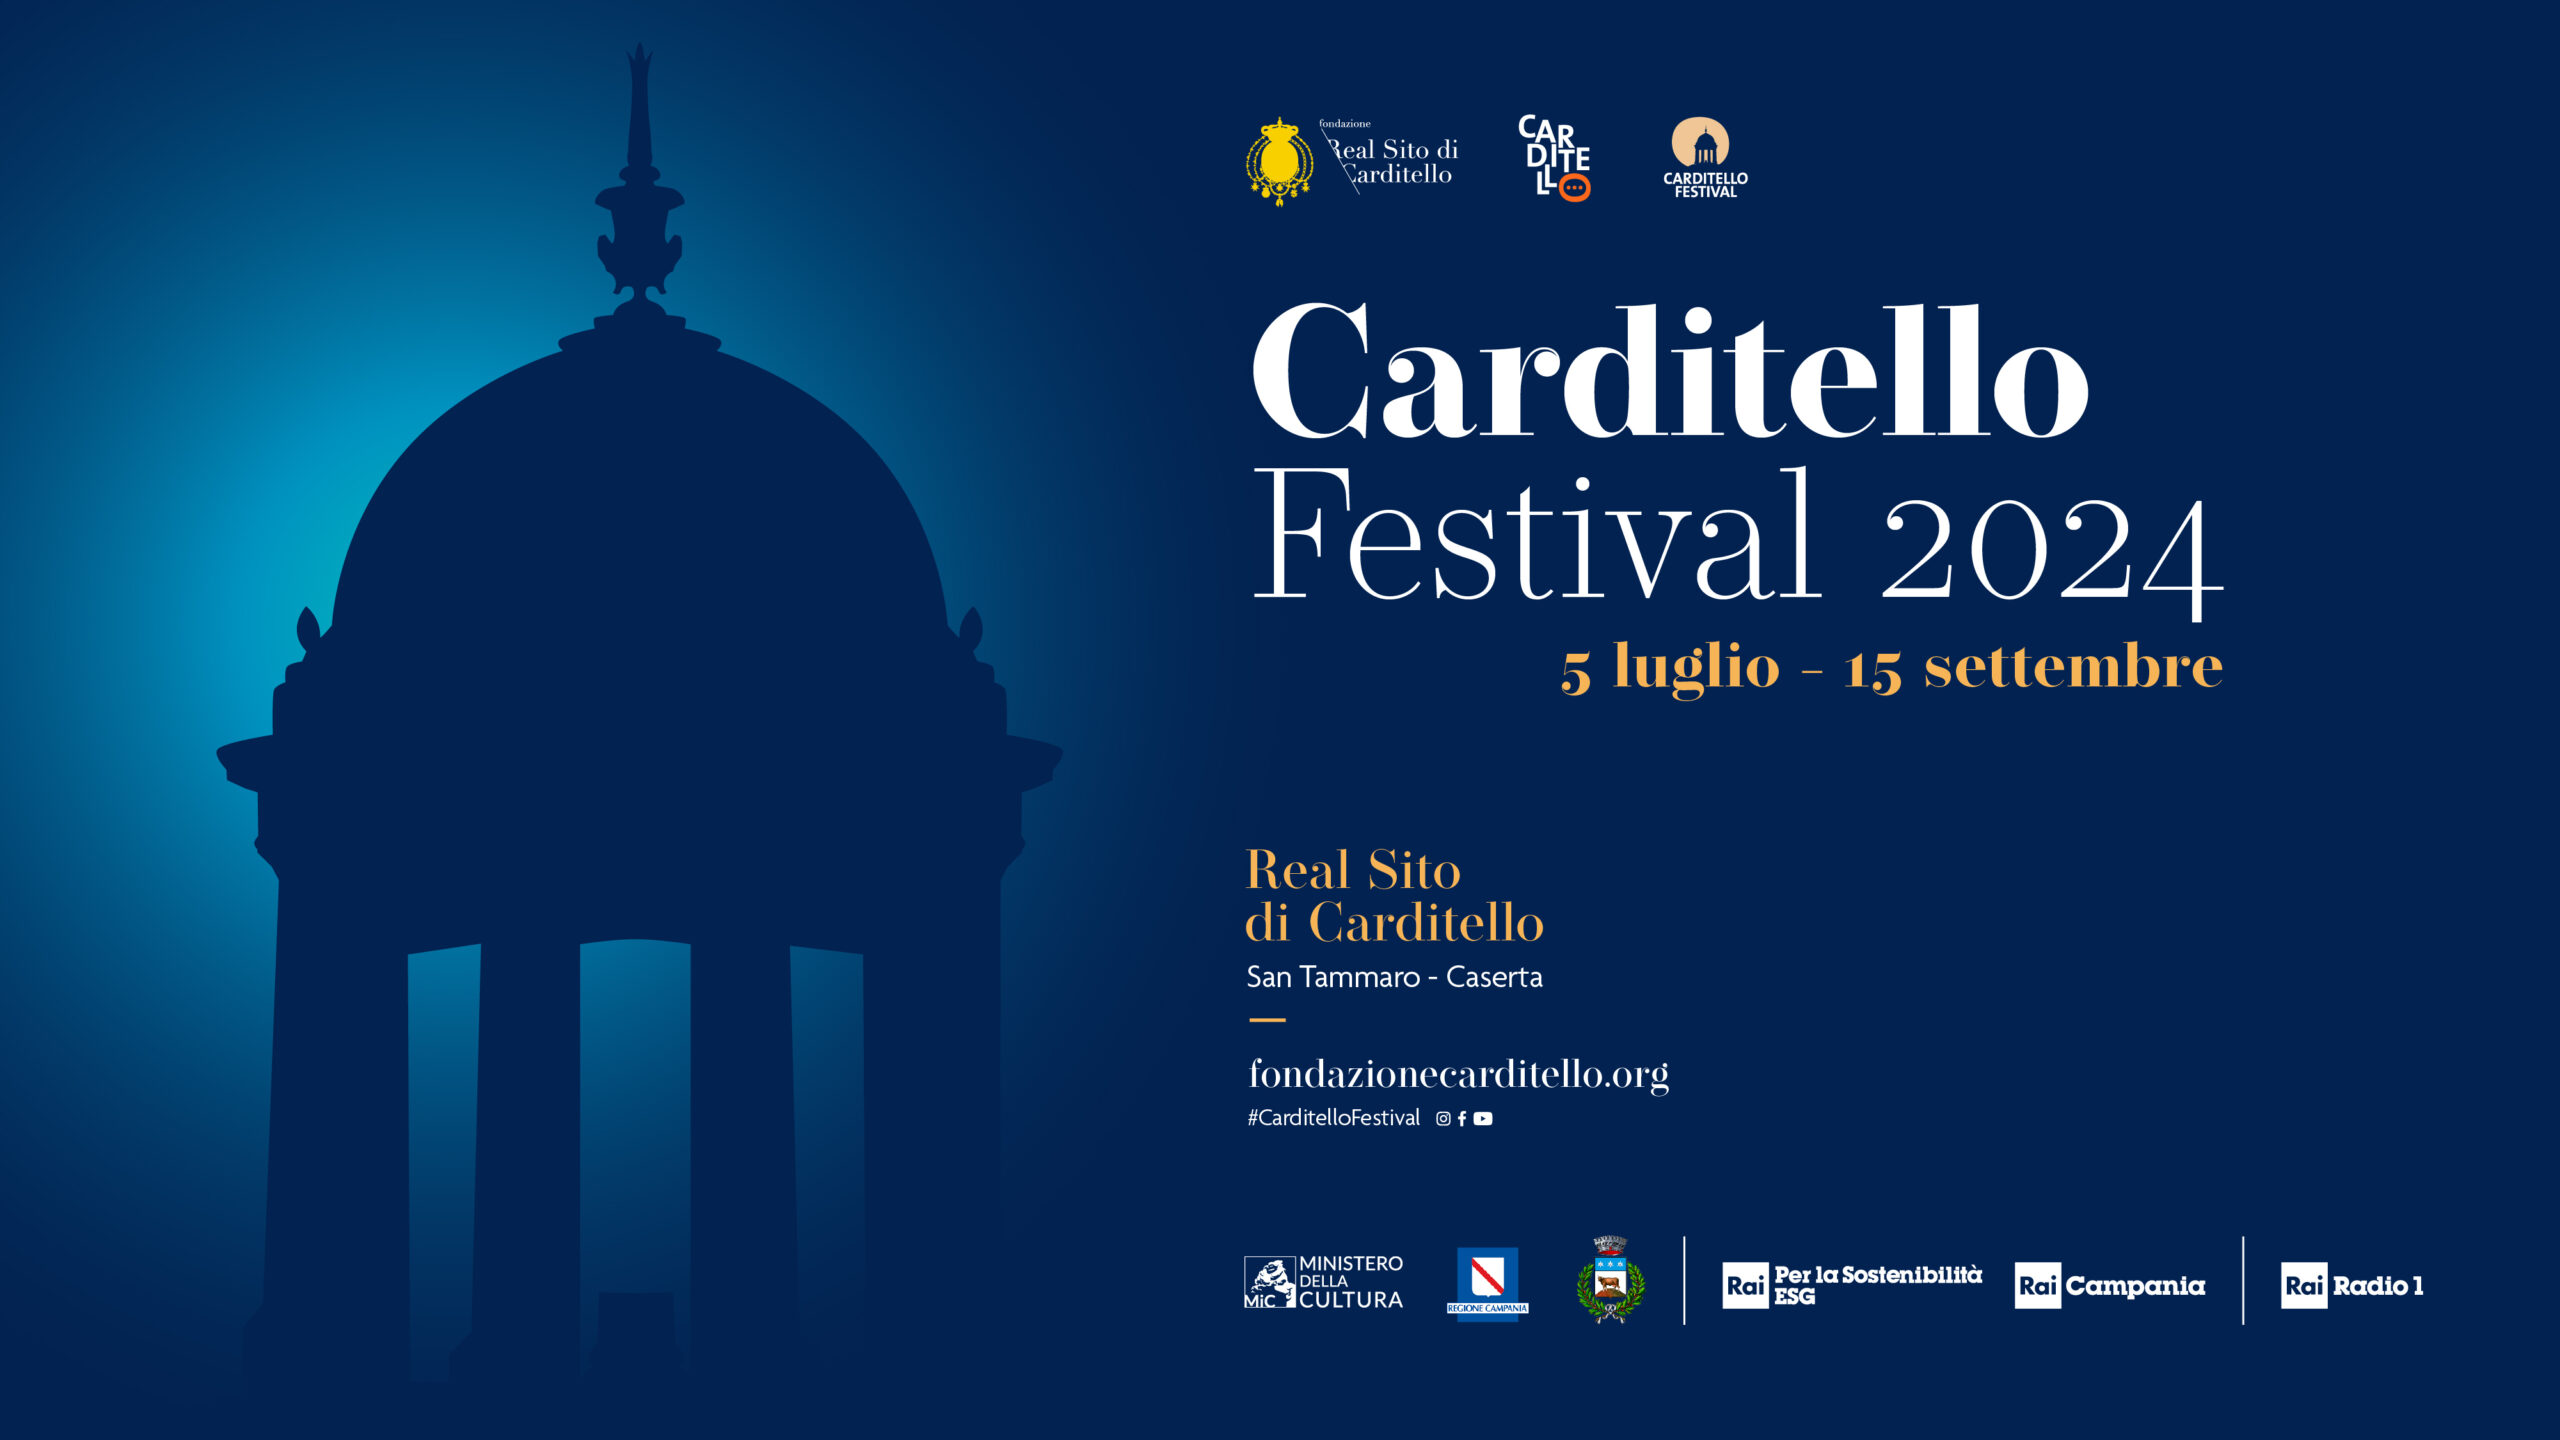 Carditello Festival 2024